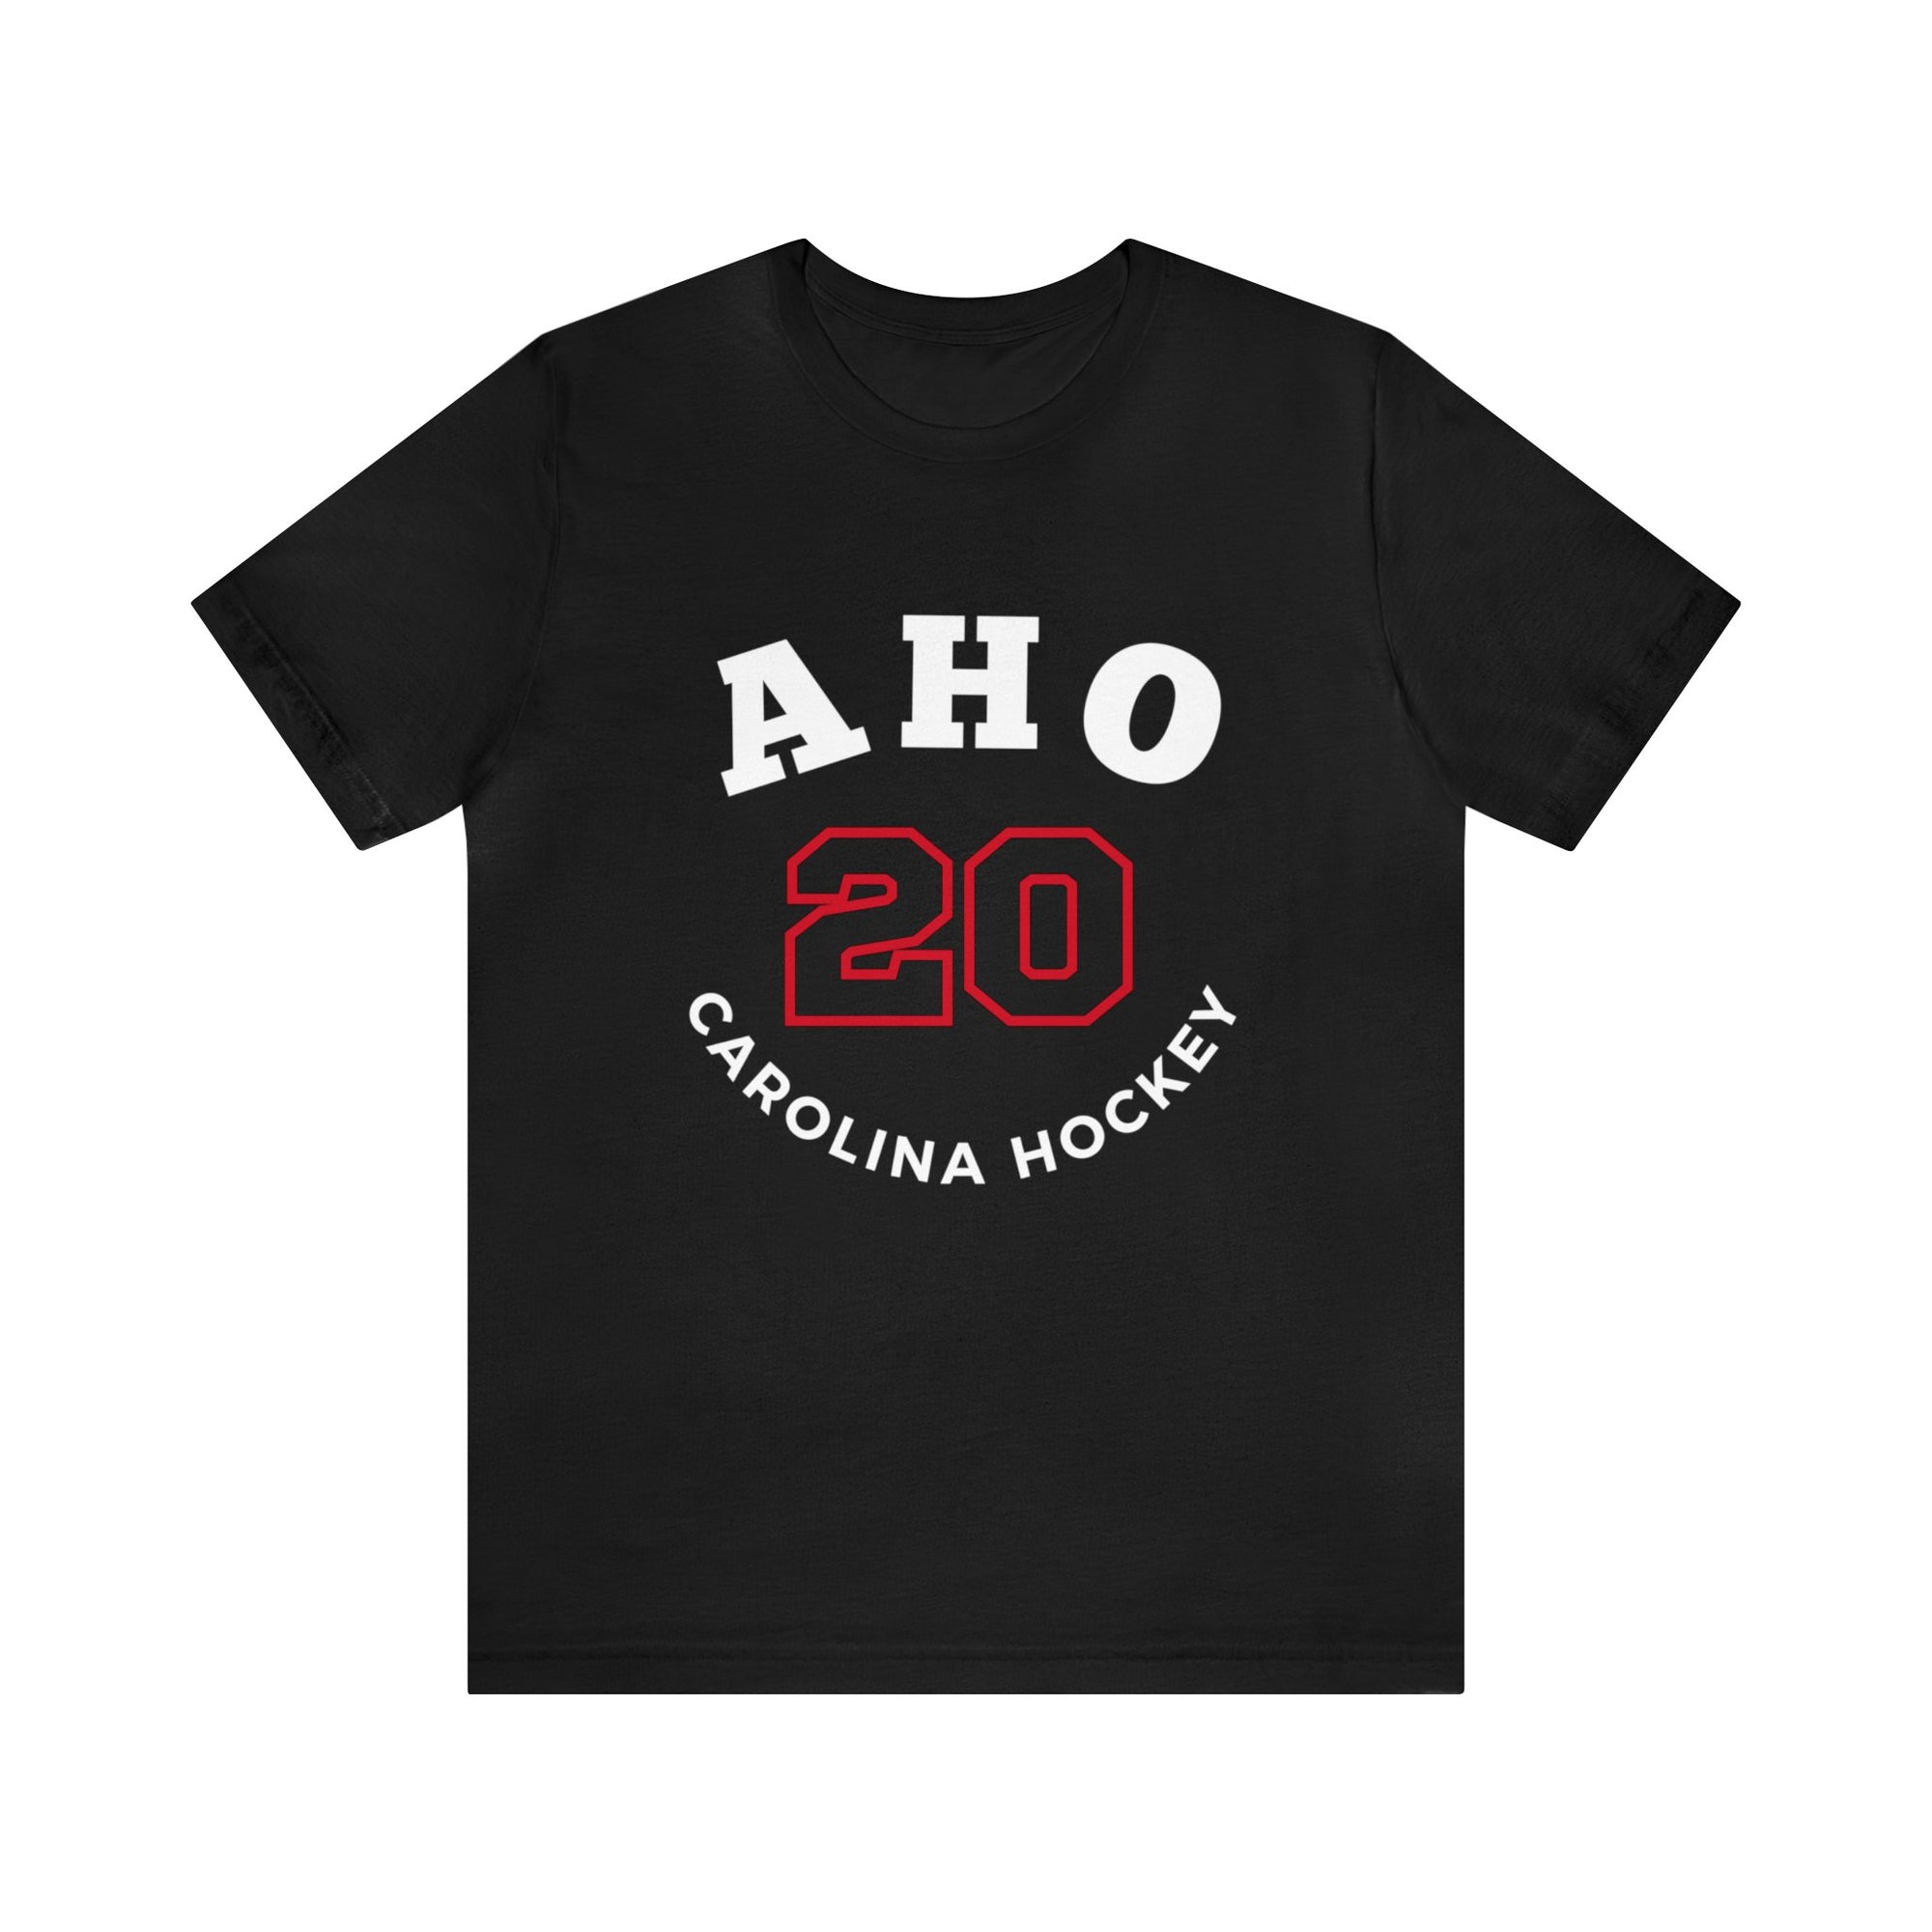 Aho 20 Carolina Hockey Number Arch Design Unisex T-Shirt